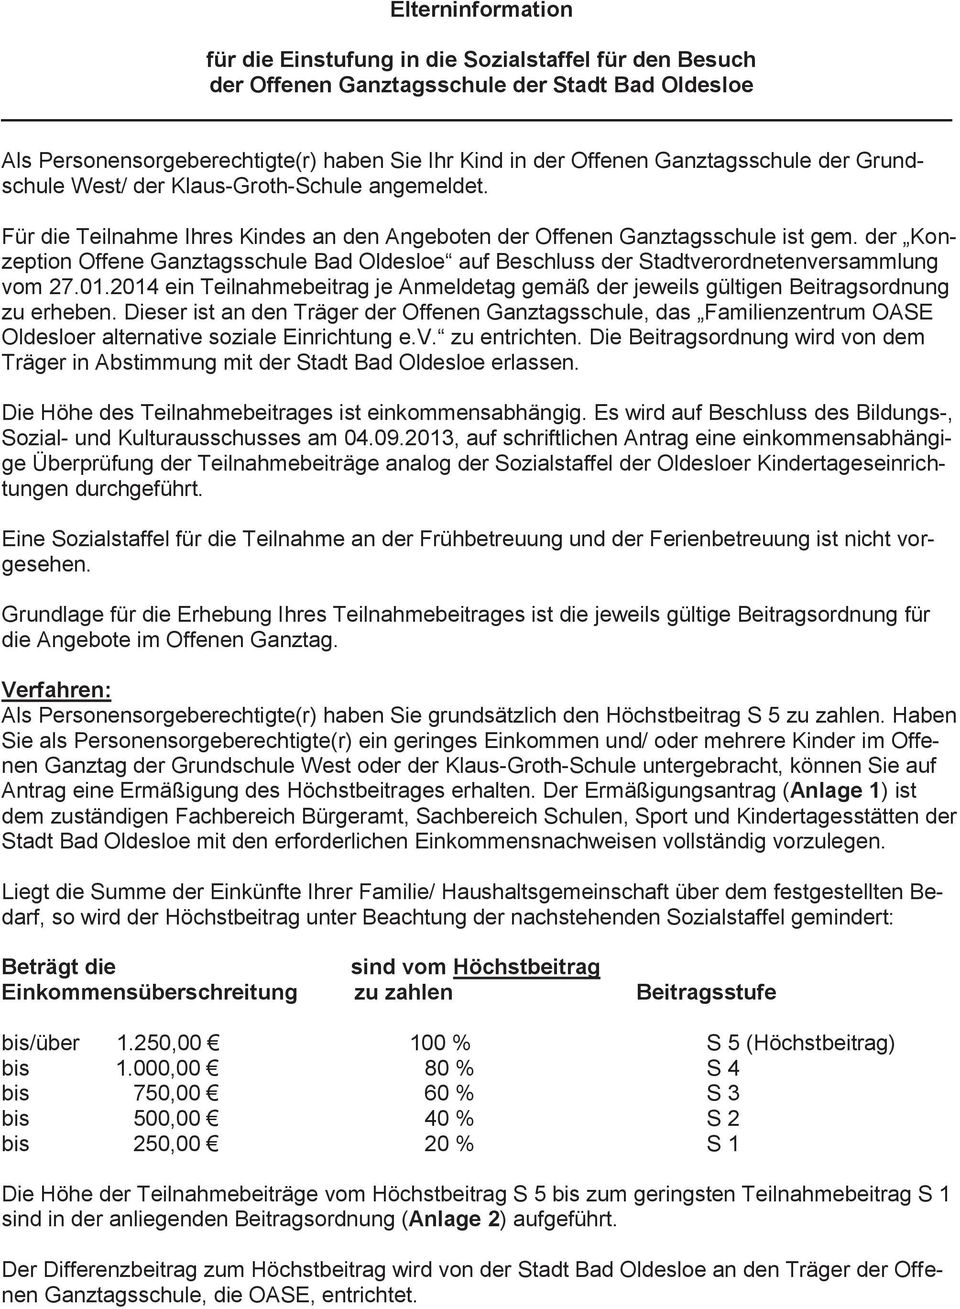 der Konzeption Offene Ganztagsschule Bad Oldesloe auf Beschluss der Stadtverordnetenversammlung vom 27.01.2014 ein Teilnahmebeitrag je Anmeldetag gemäß der jeweils gültigen Beitragsordnung zu erheben.